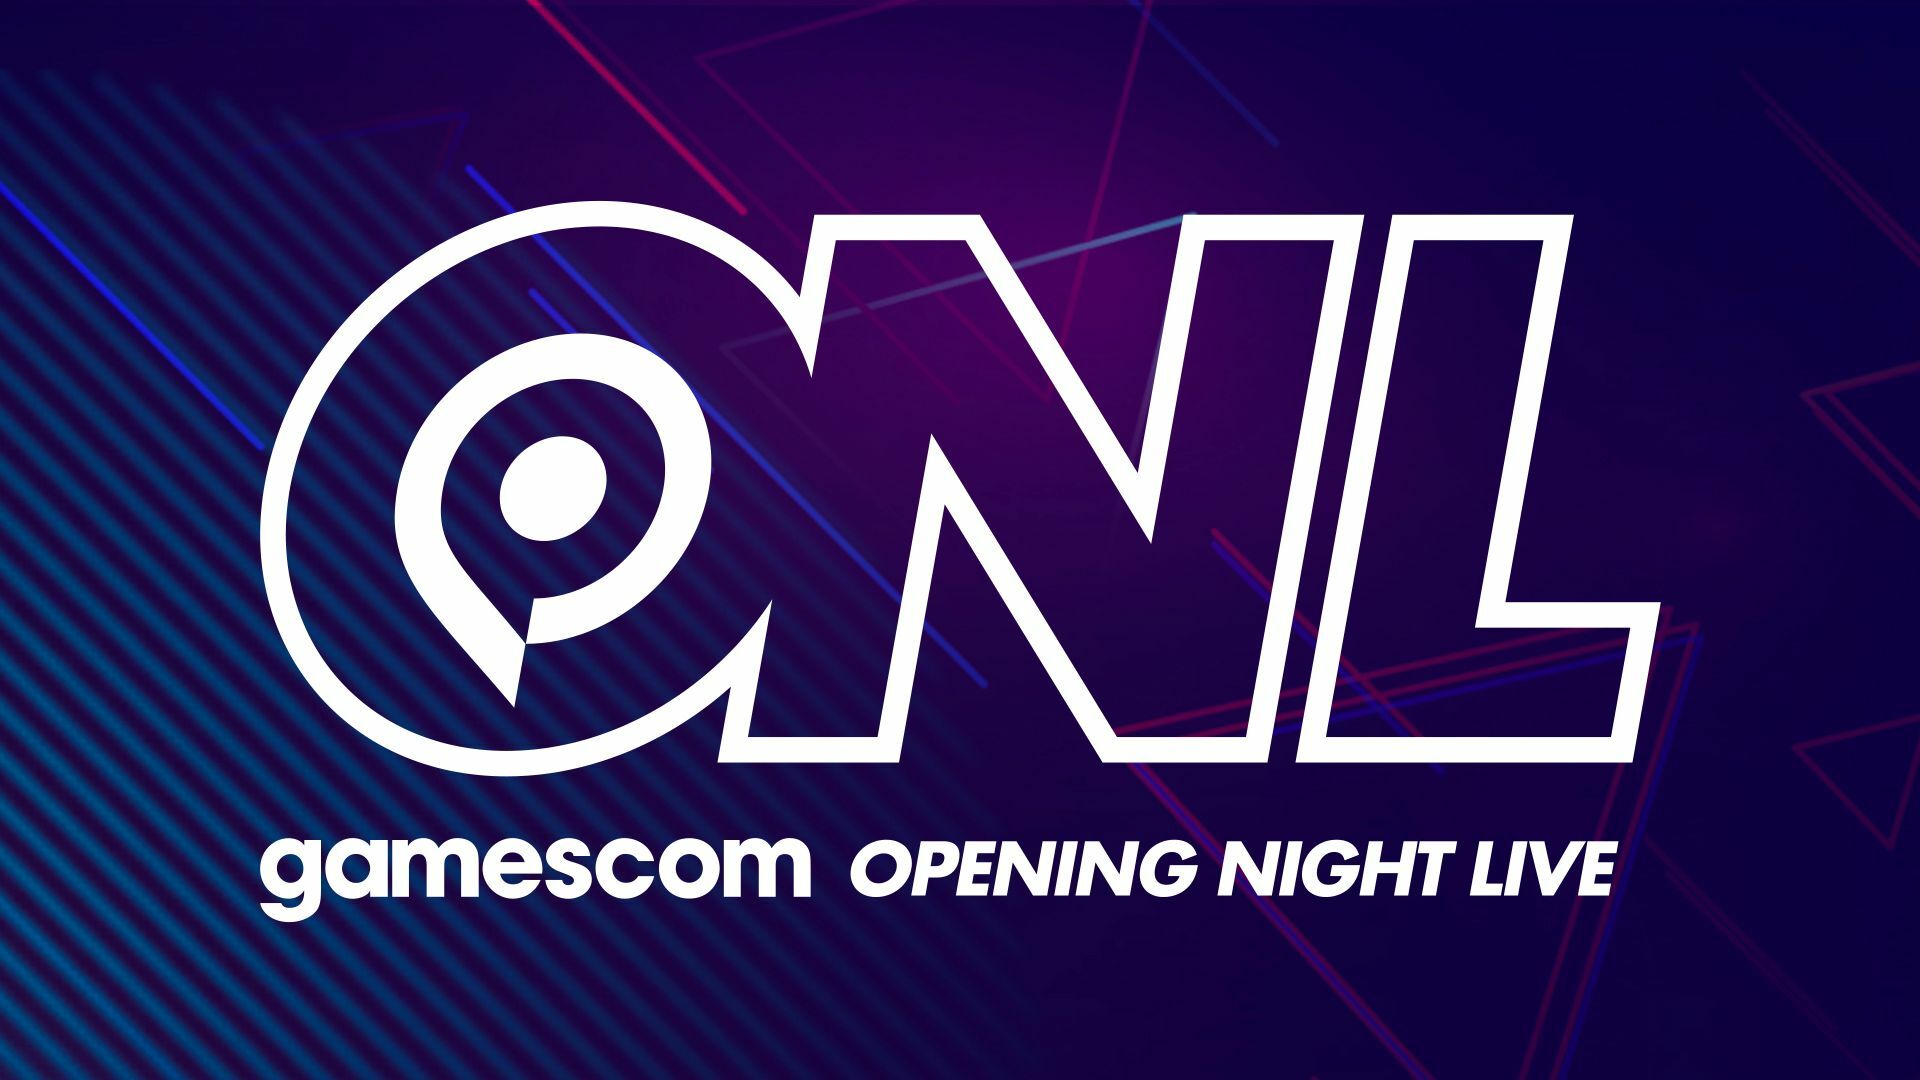 نمایشگاه Gamescom 2021: پخش زنده مراسم افتتاحیه